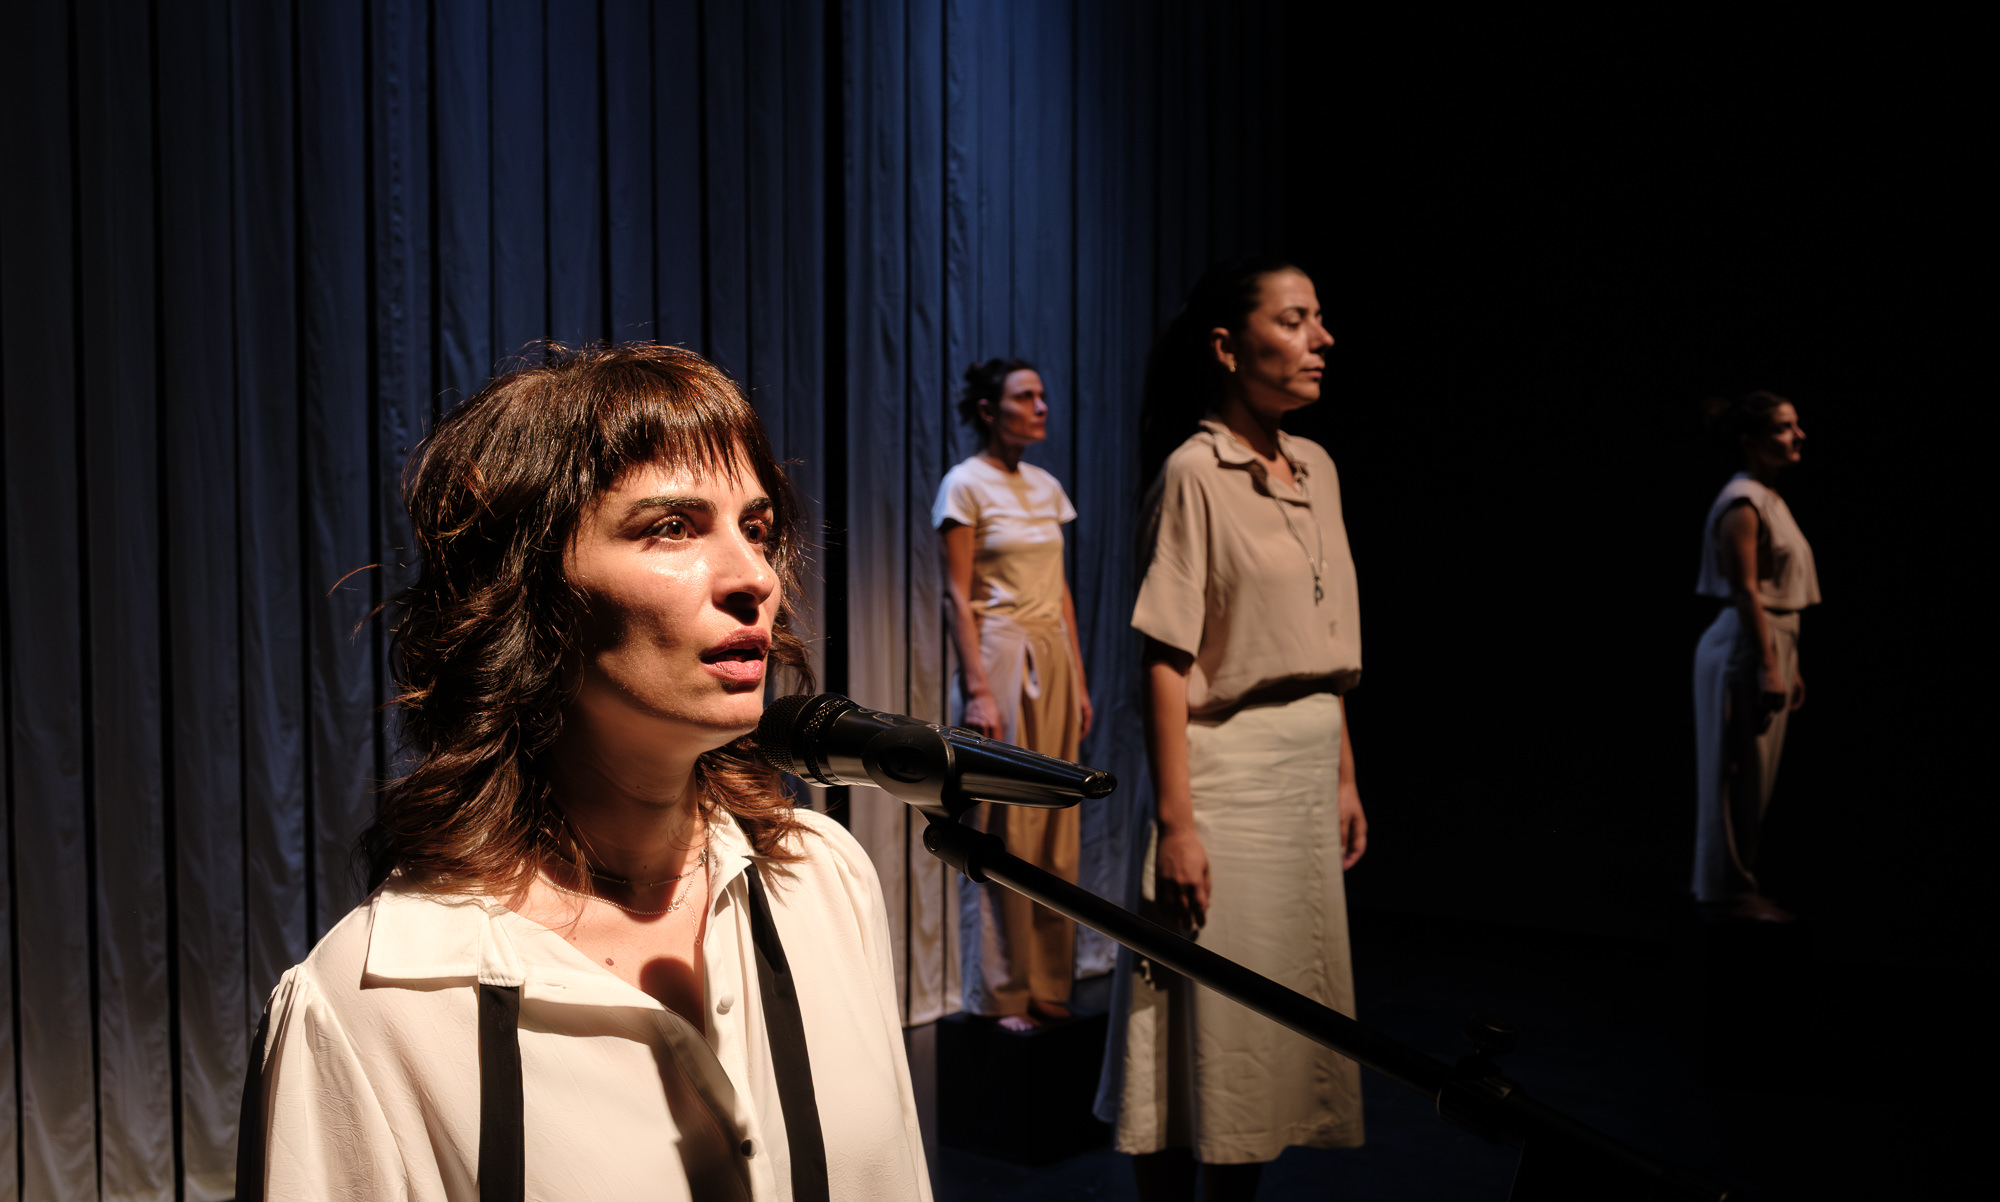 Νέα παράσταση θεάτρου ντοκιμαντέρ "Πένθος: Ο Κυκλος της Ζωής" από τη Μάρθα Μπουζιούρη
